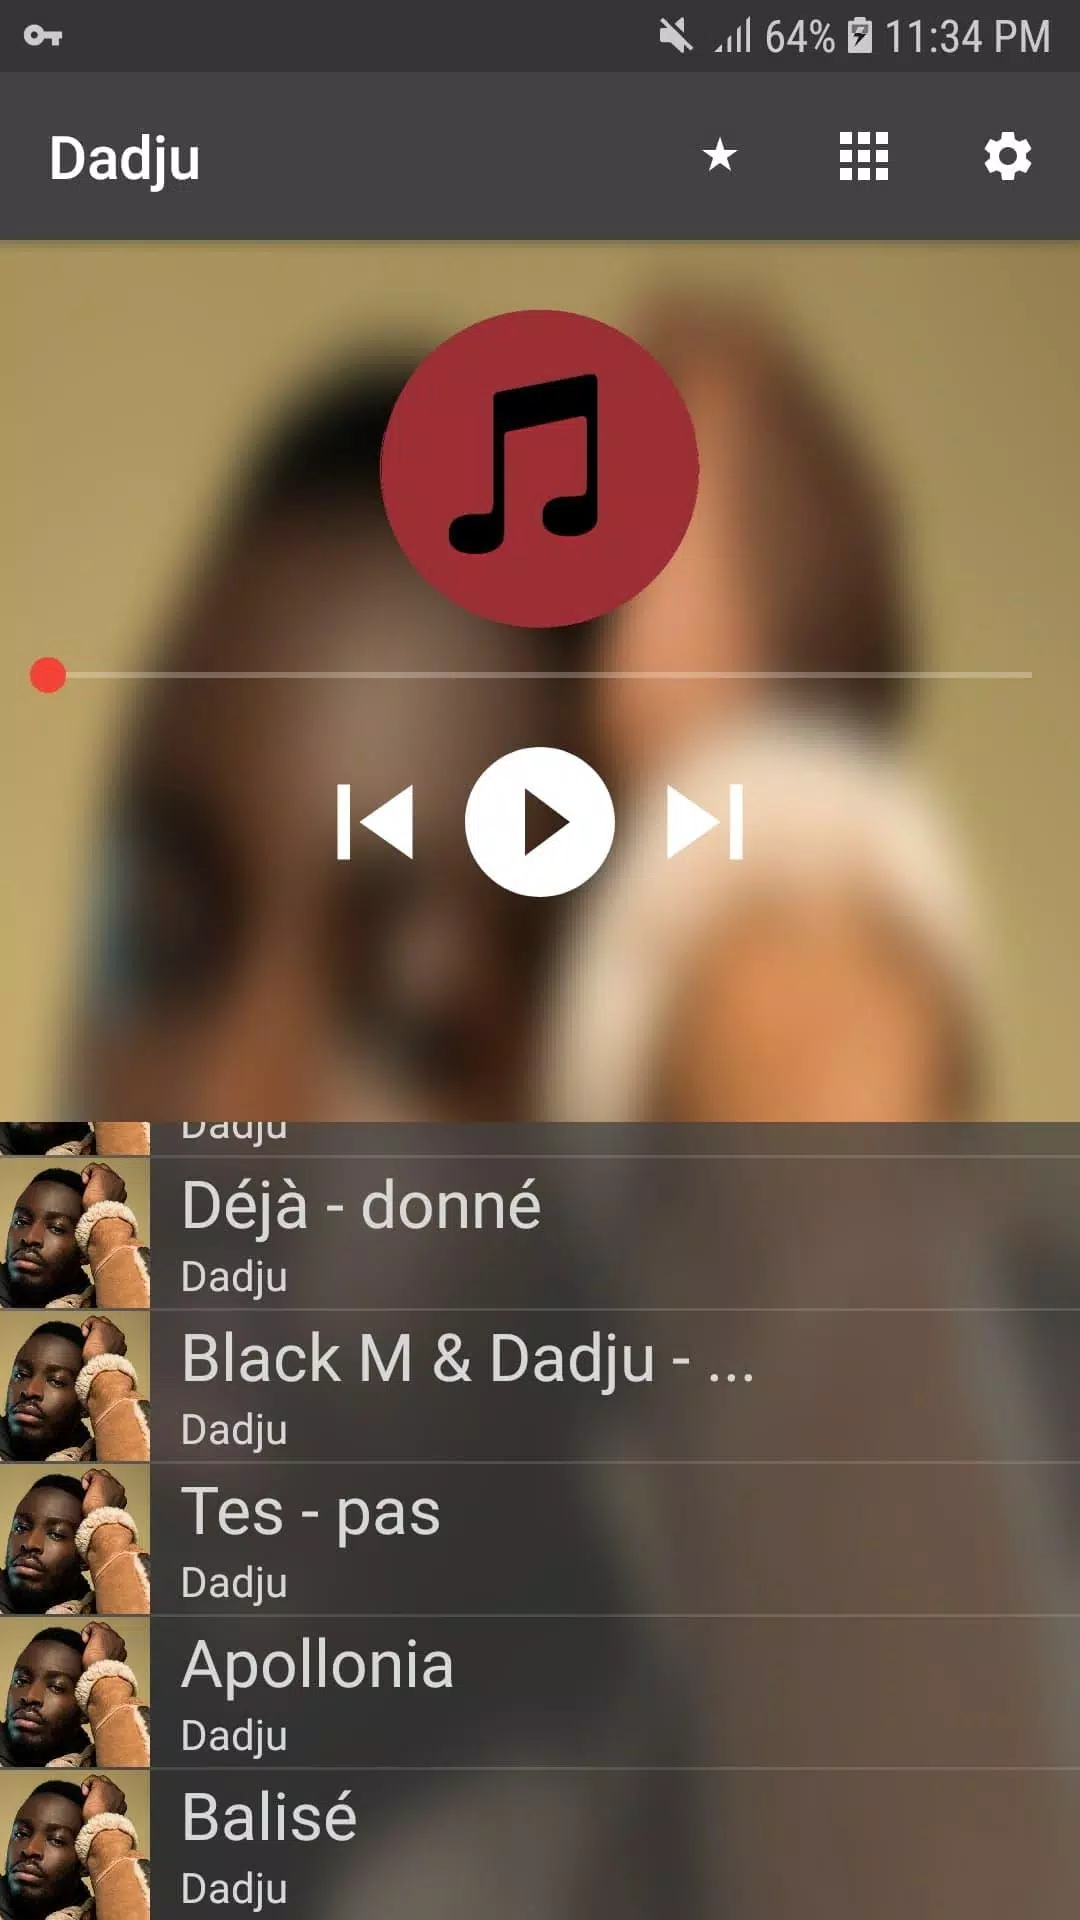 Dadju Songs mp3 APK pour Android Télécharger